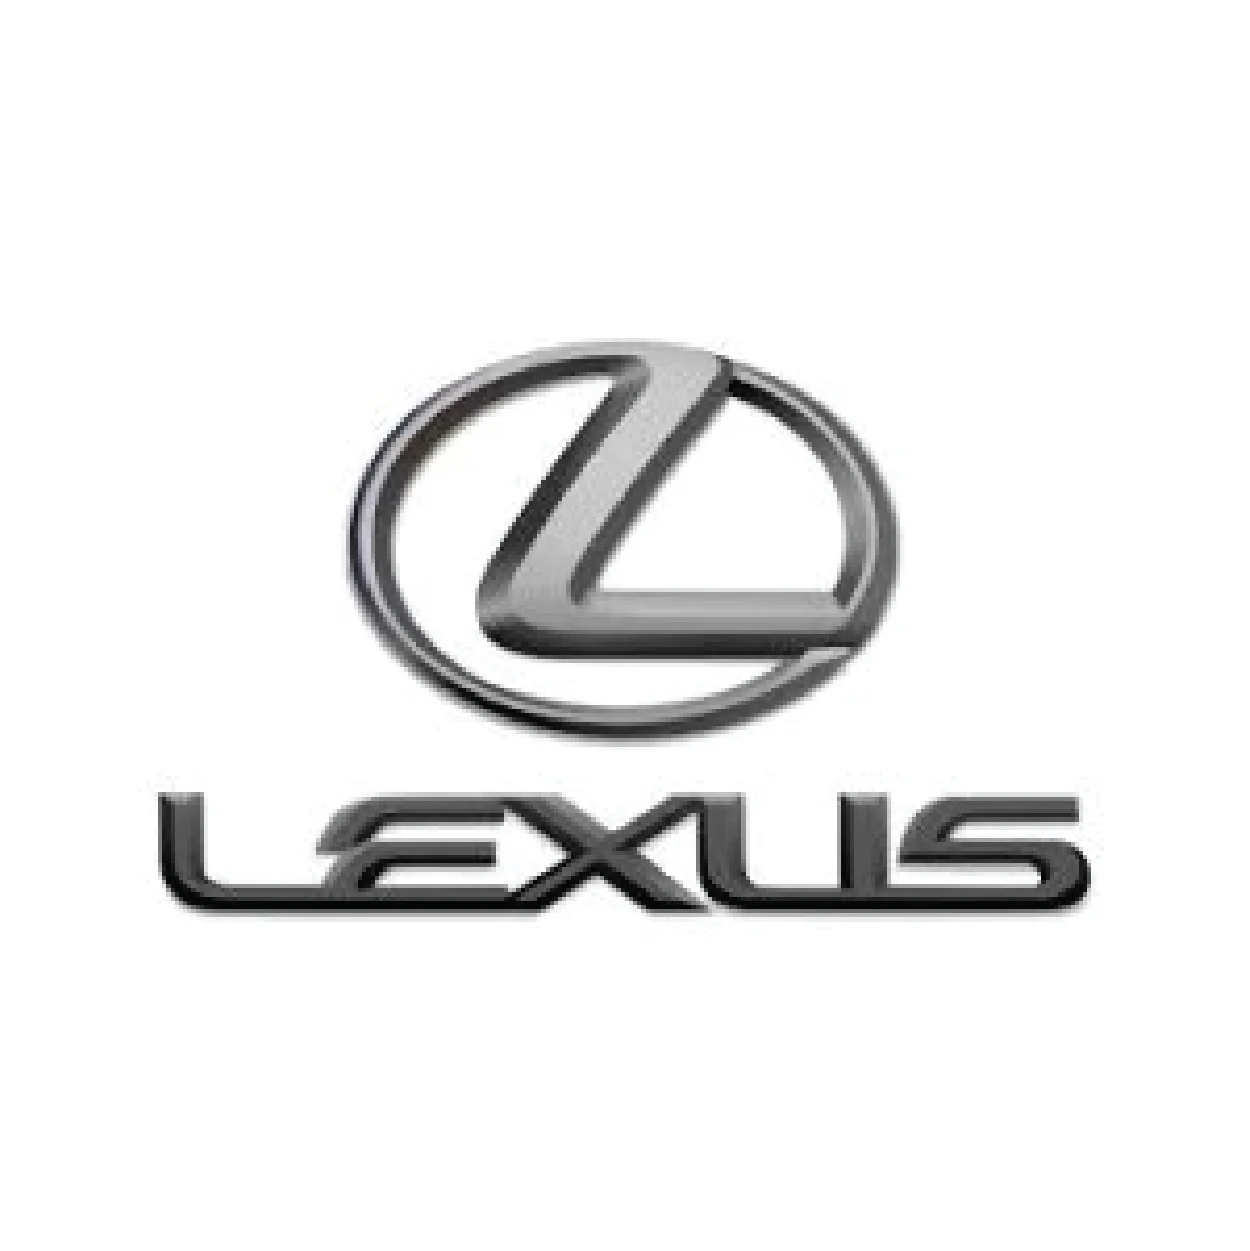 lexus-wadex-serwiskluczy24-pl